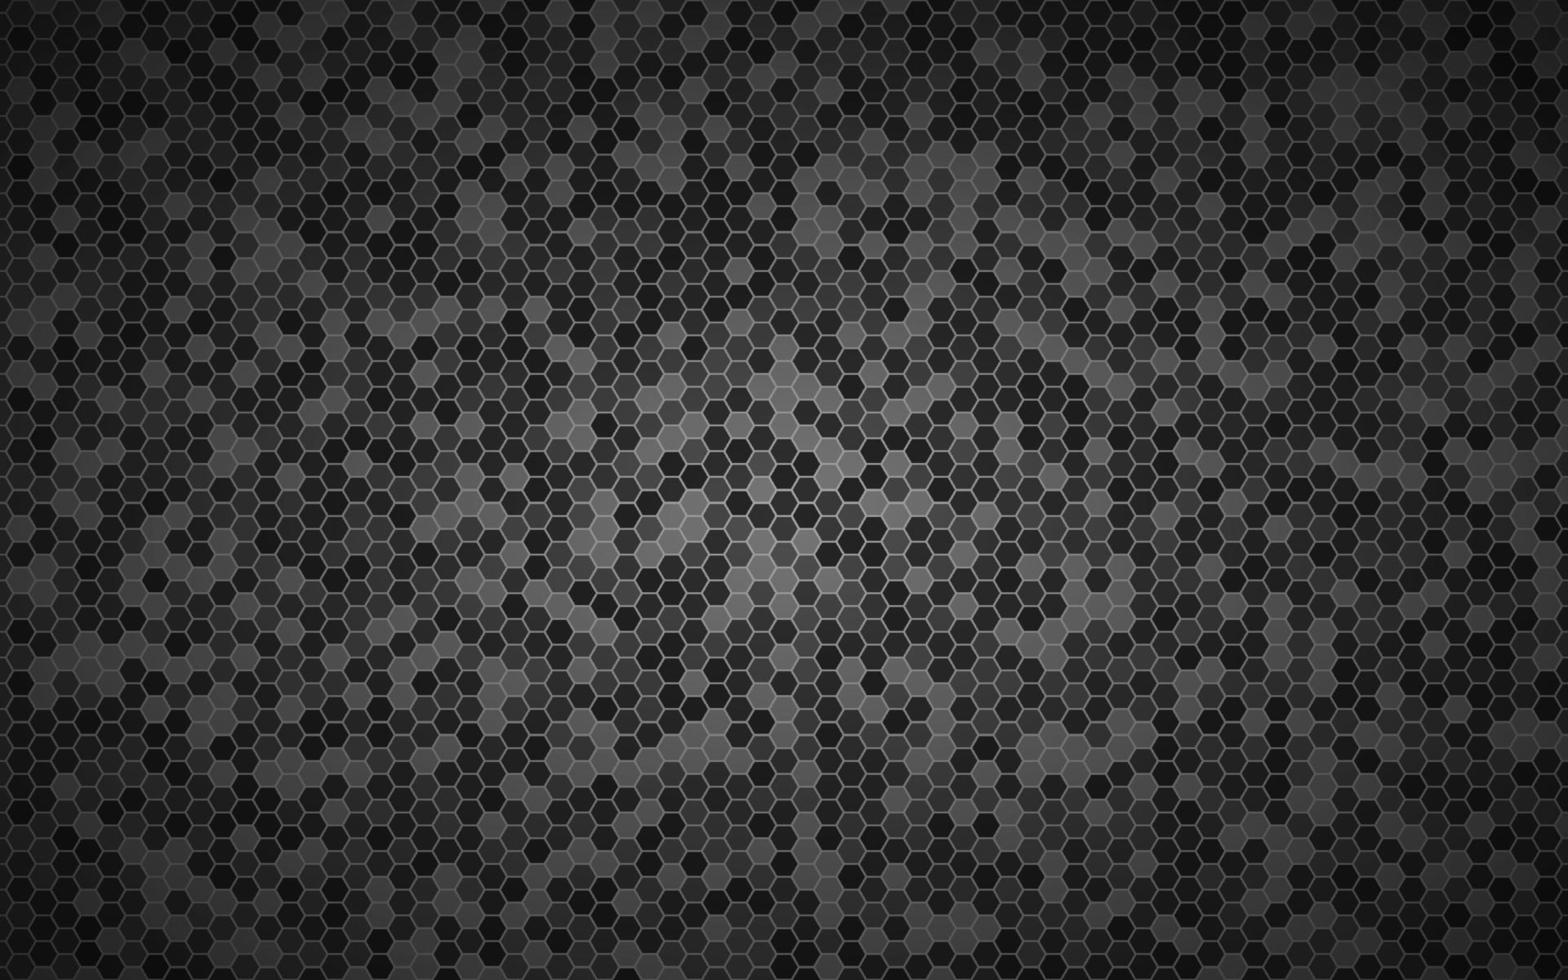 sfondo geometrico blu moderno ad alta risoluzione con griglia poligonale. modello esagonale metallico nero astratto. semplice illustrazione vettoriale